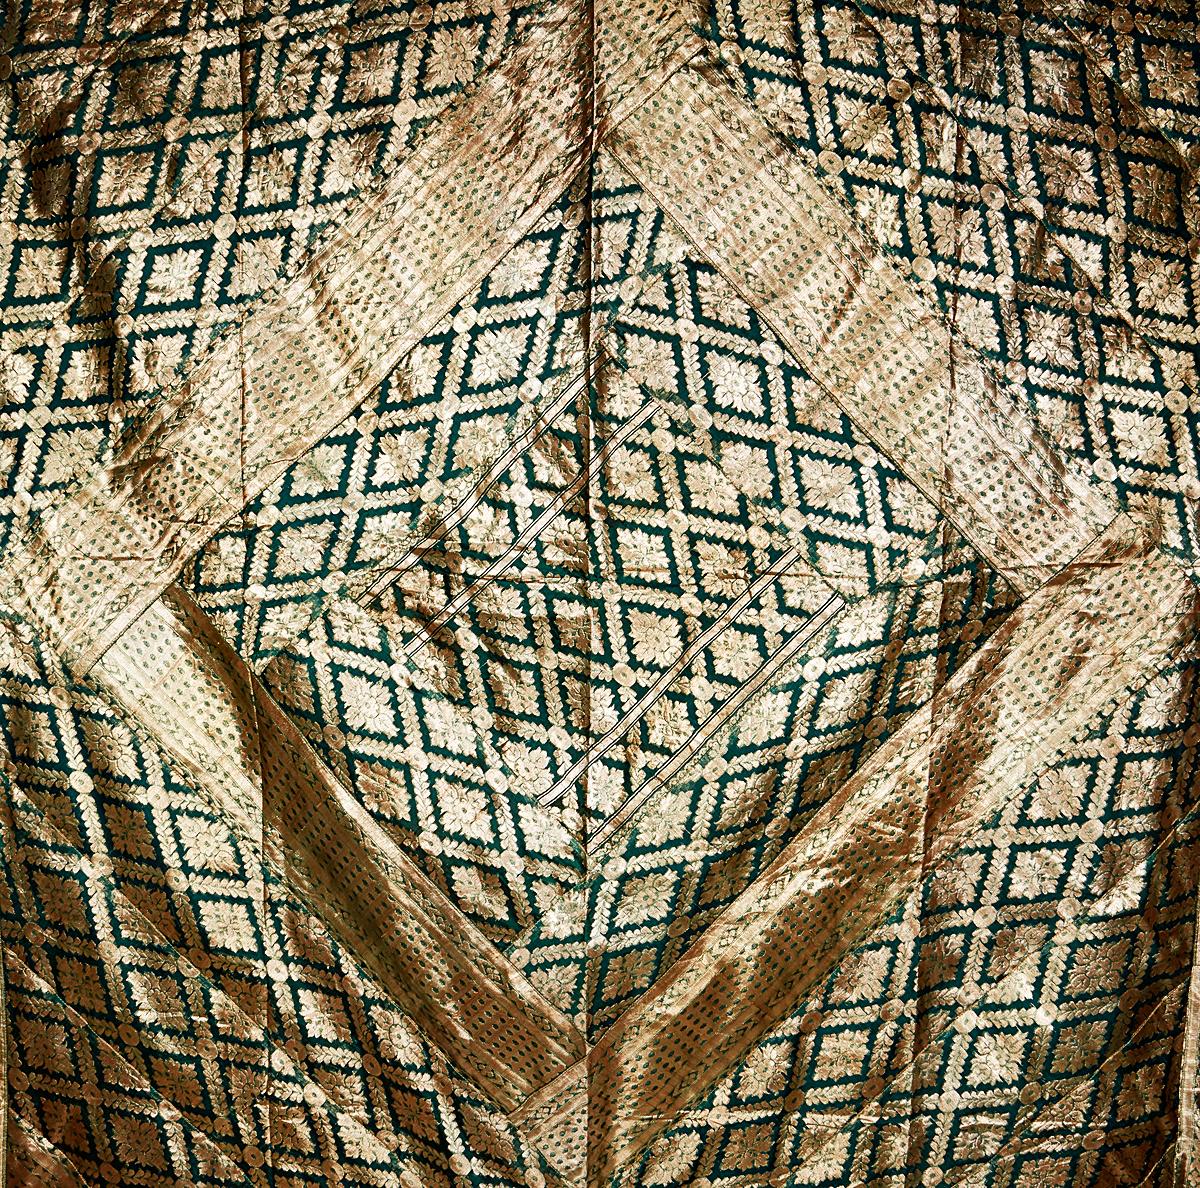 Bangladeschische Quilts, die als Kantha bekannt sind, bestehen aus zwei bis drei Stoffstücken, die mit dekorativen Stickstichen zusammengenäht werden. Sie sind meist aus Saris gefertigt und werden hauptsächlich als Bettzeug verwendet, können aber